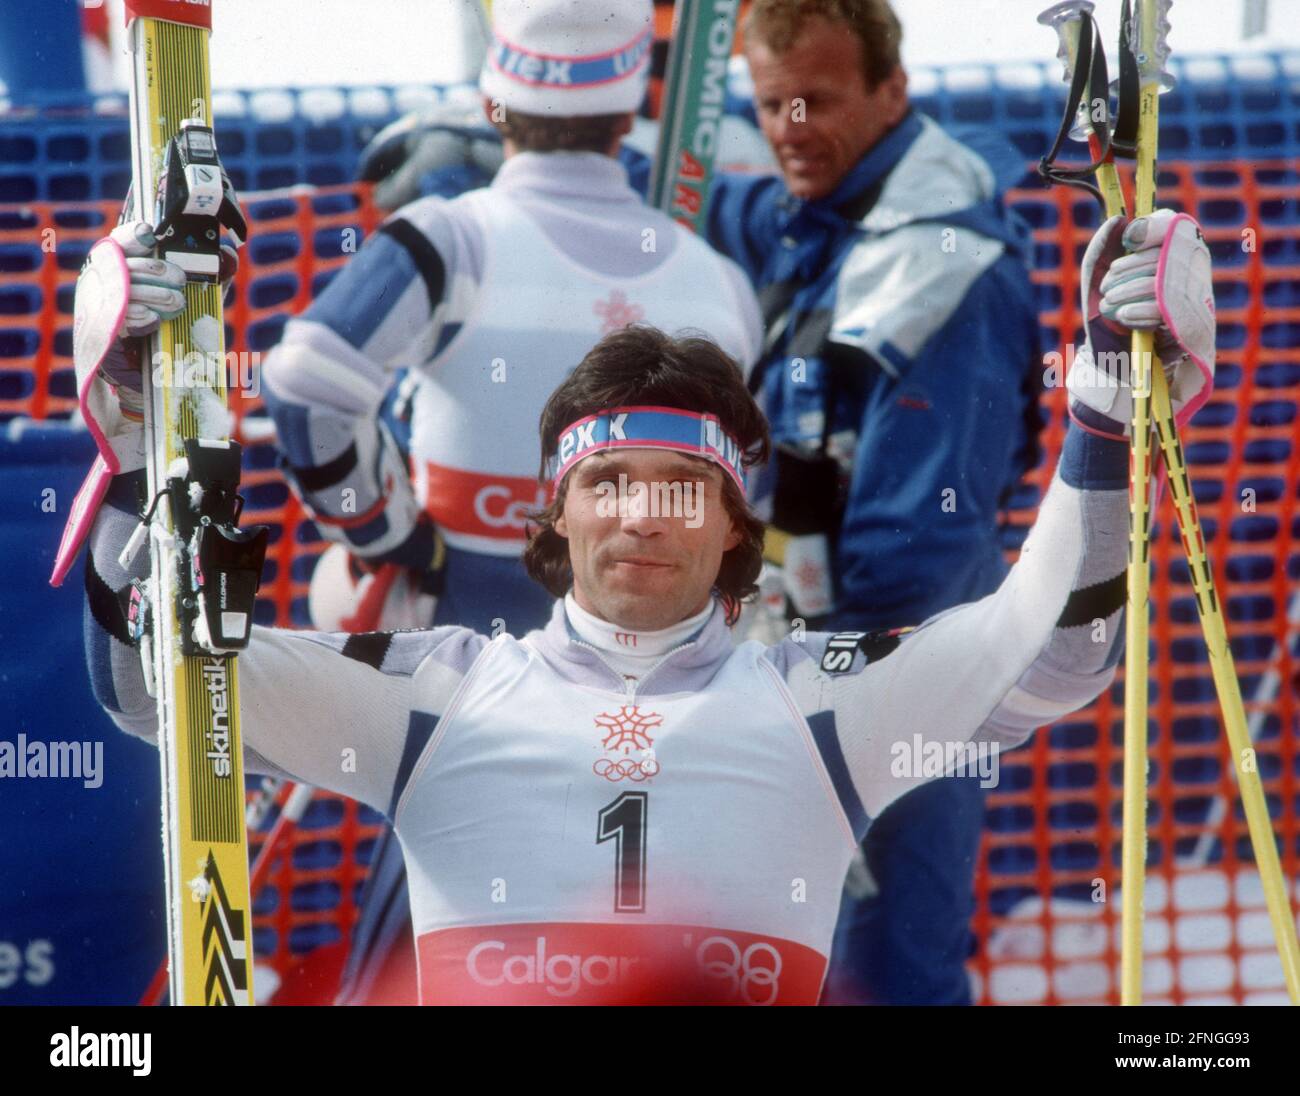 Olympische Winterspiele in Calgary 1988 / Ski Alpin / Slalom / 27.02.1988. Frank Wörndl (BRD) nach dem Gewinn der Silbermedaille im Slalom. [Automatisierte Übersetzung] Stockfoto